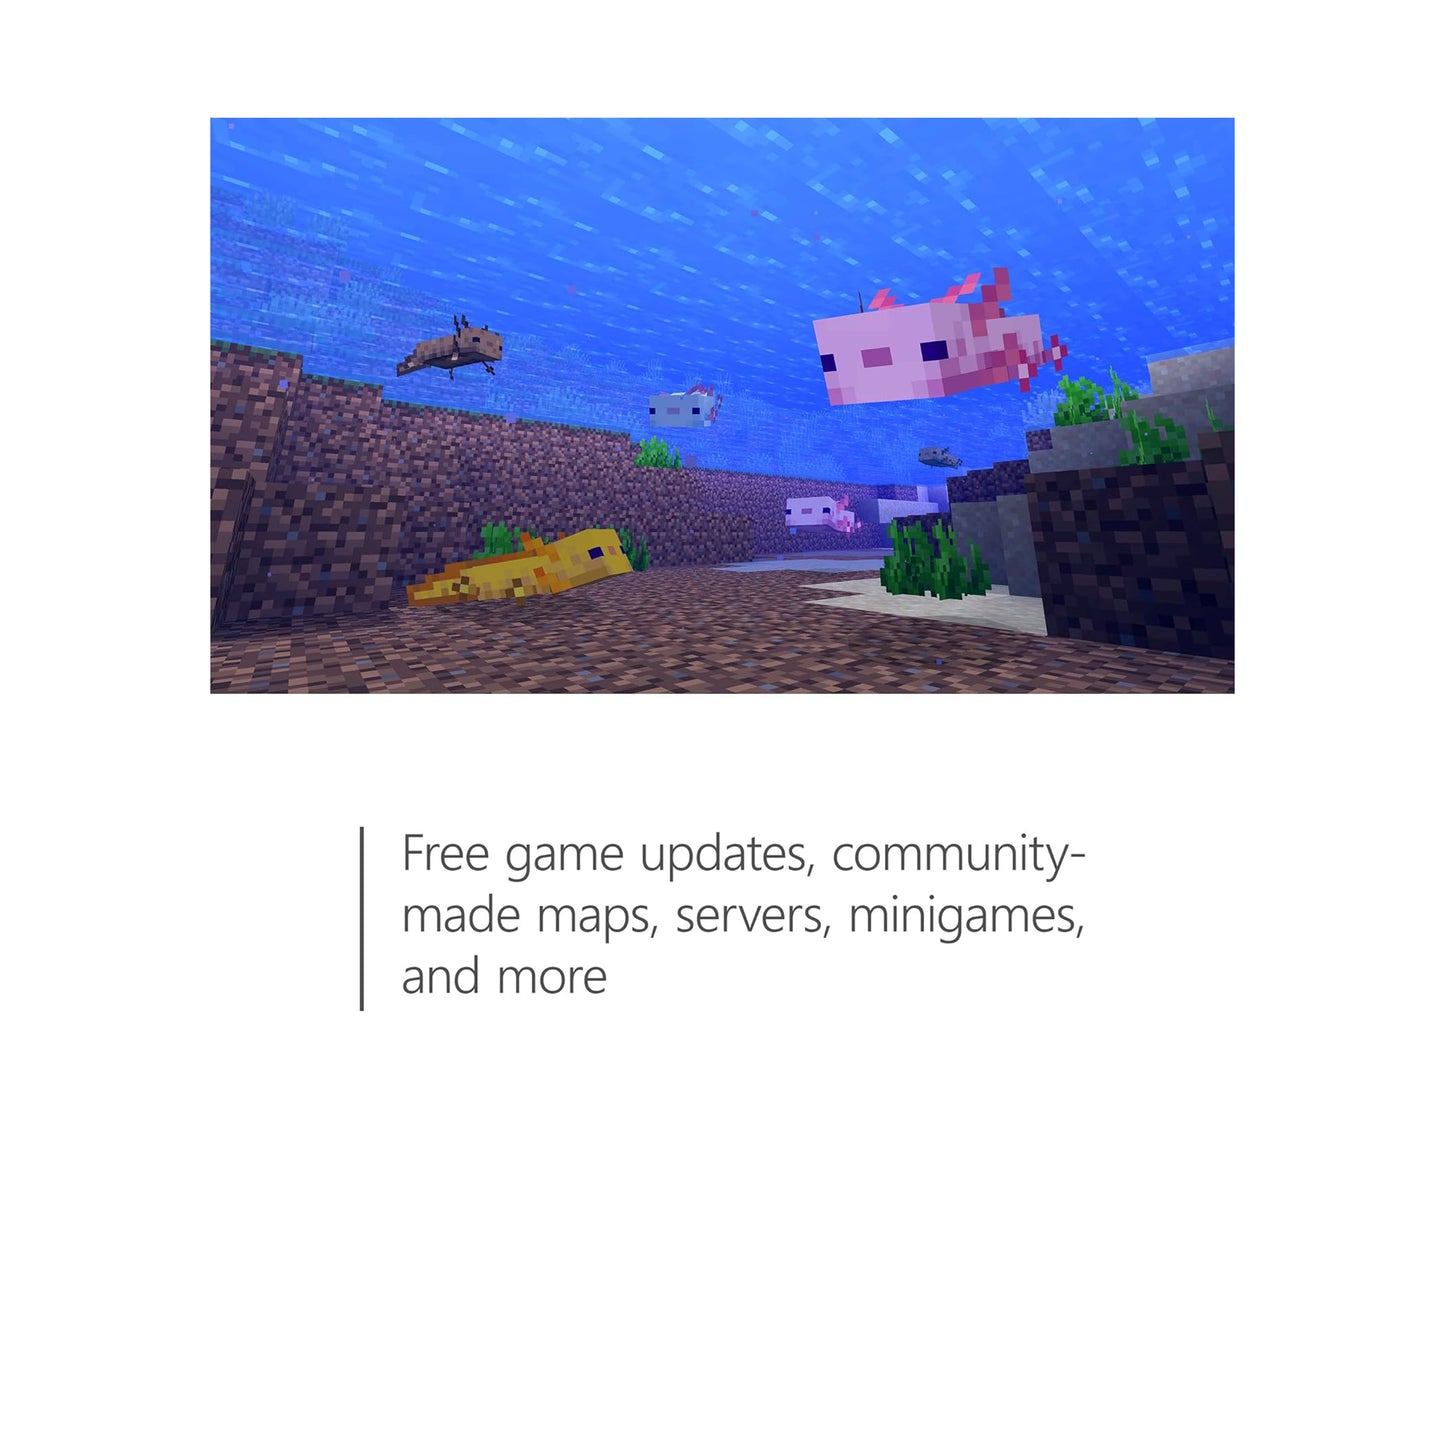 Minecraft مع 3500 Minecoins – Xbox Series X وXbox One 